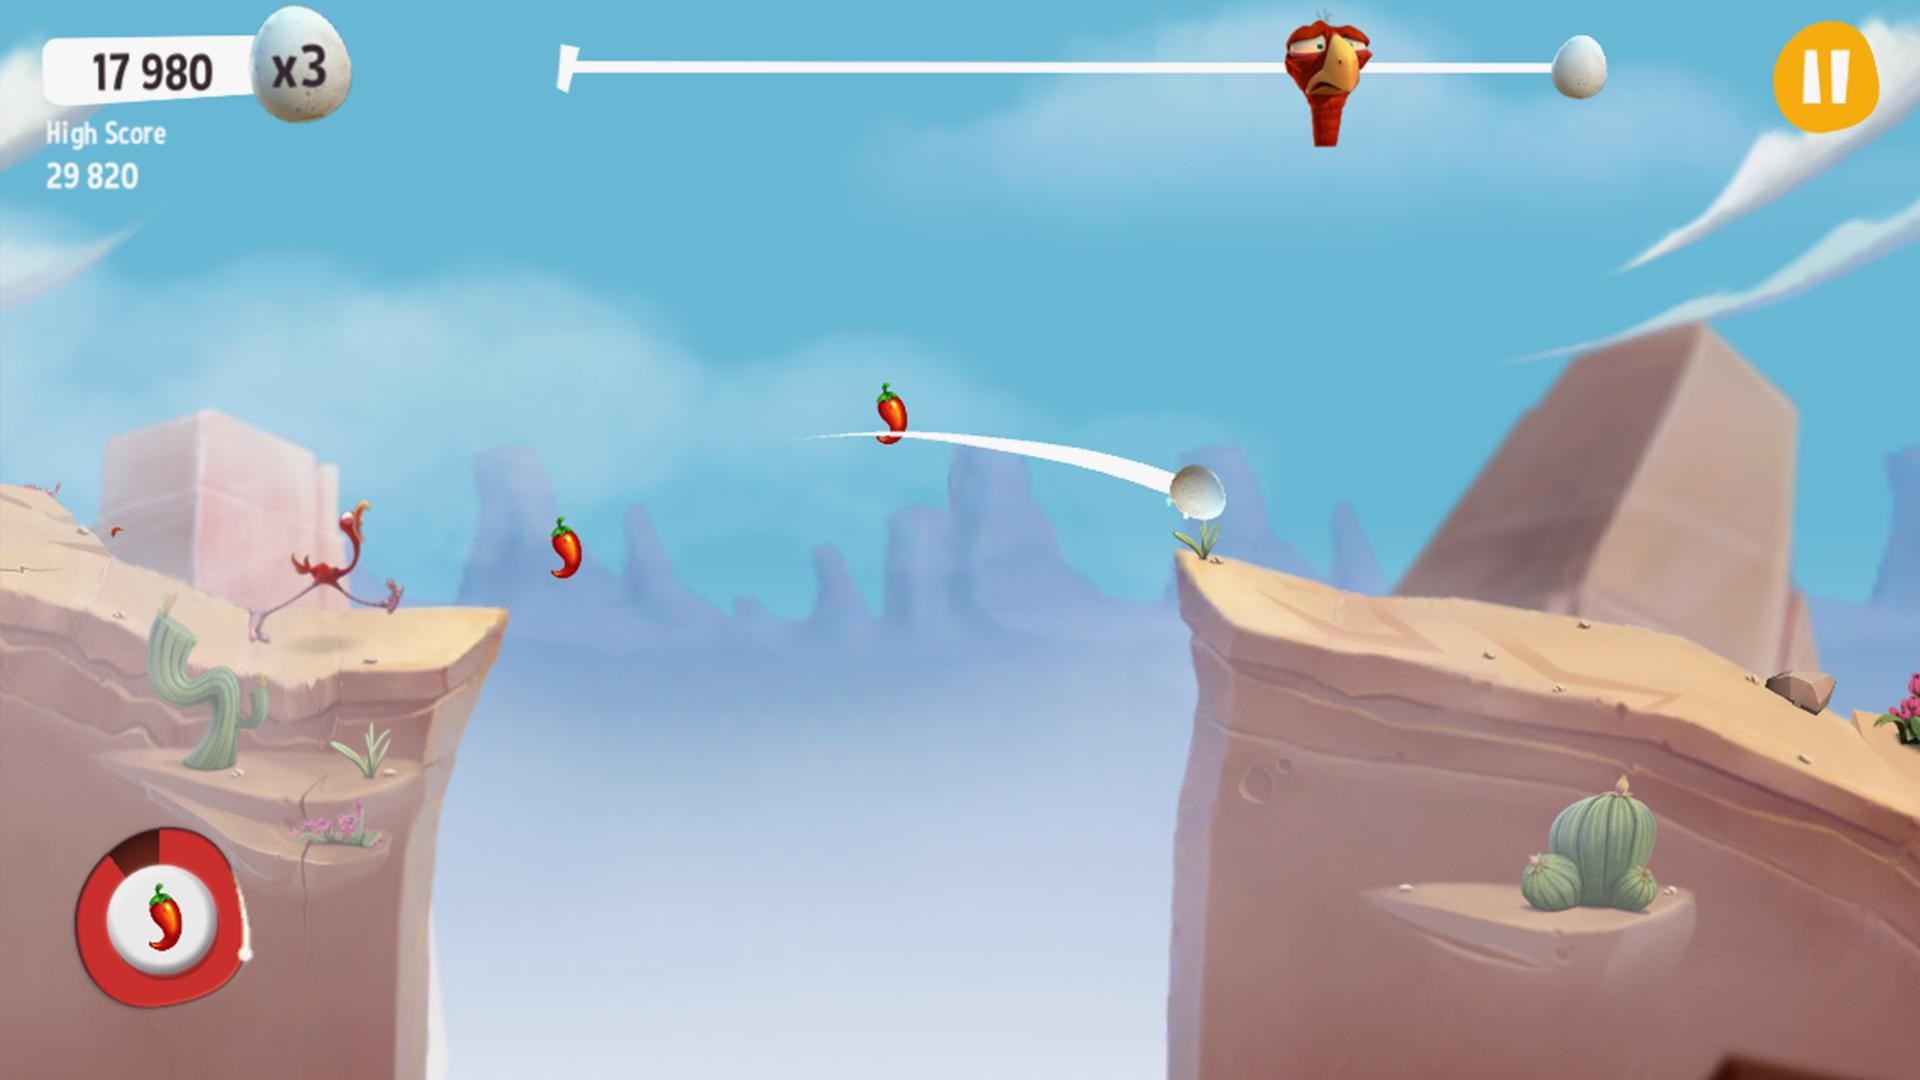 Sonsuz koşu oyunu Cracké Rush, ücretsiz olarak mobil cihazlar için yayınlandı